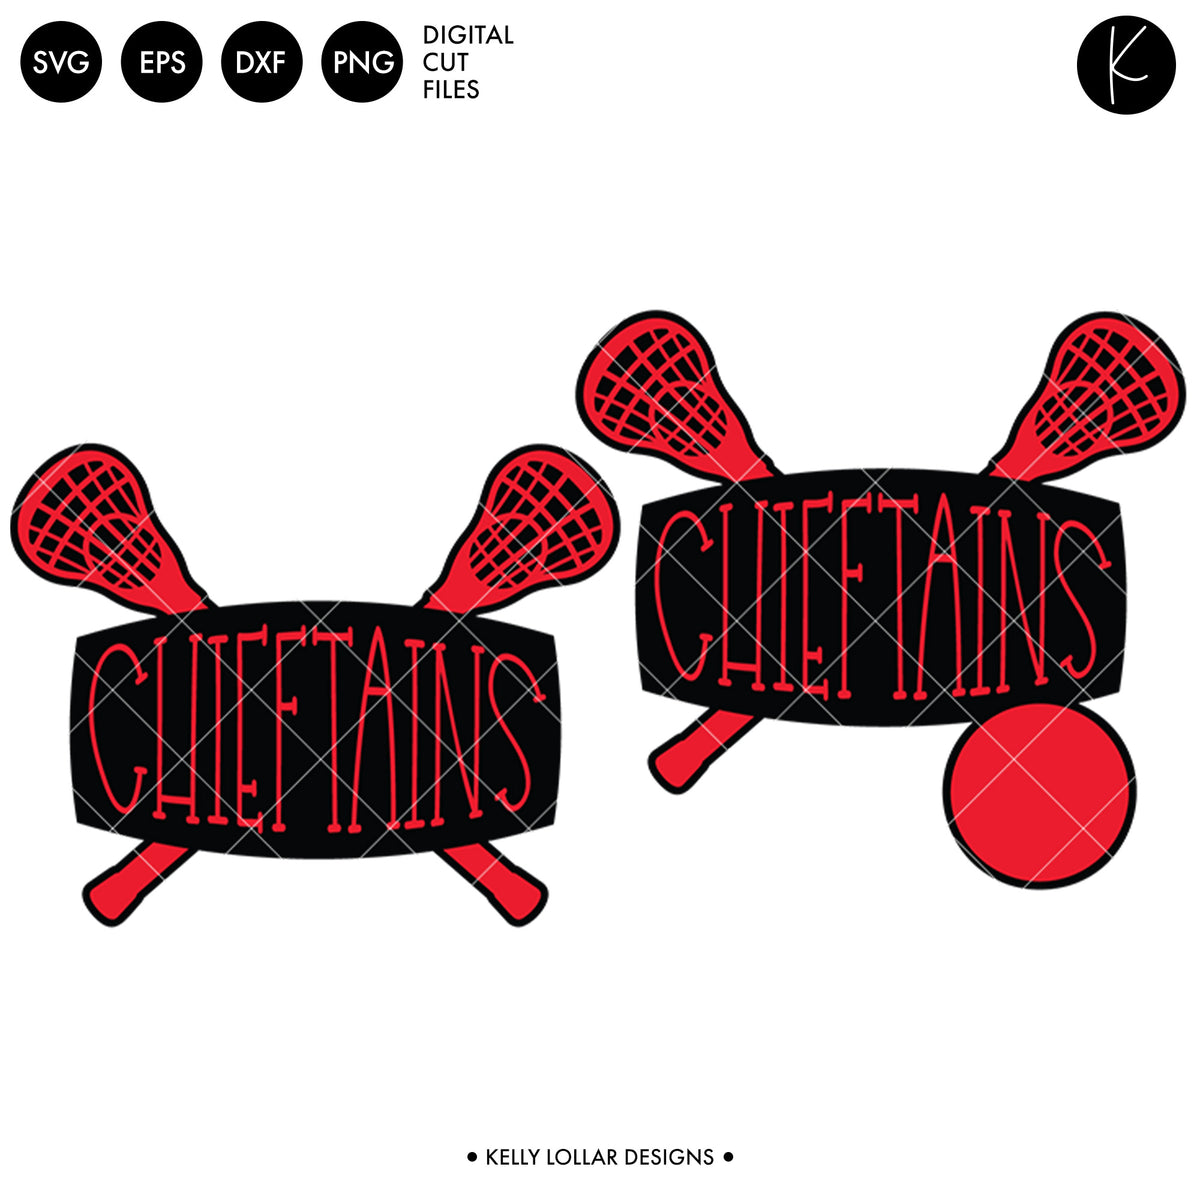 Chieftains Lacrosse Bundle | SVG DXF EPS PNG Cut Files